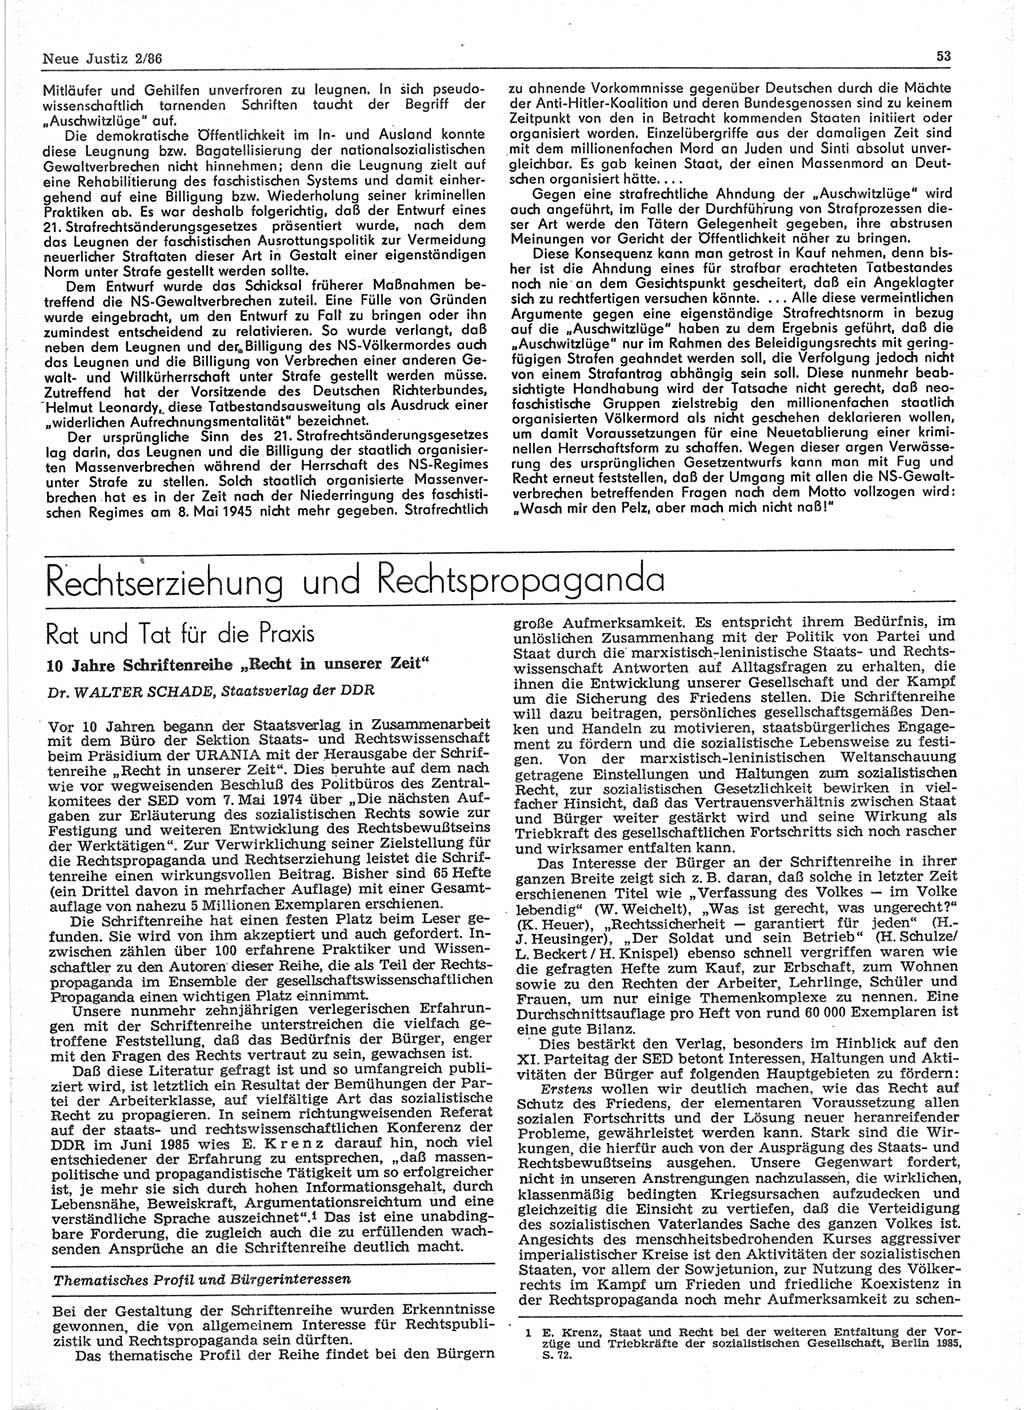 Neue Justiz (NJ), Zeitschrift für sozialistisches Recht und Gesetzlichkeit [Deutsche Demokratische Republik (DDR)], 40. Jahrgang 1986, Seite 53 (NJ DDR 1986, S. 53)